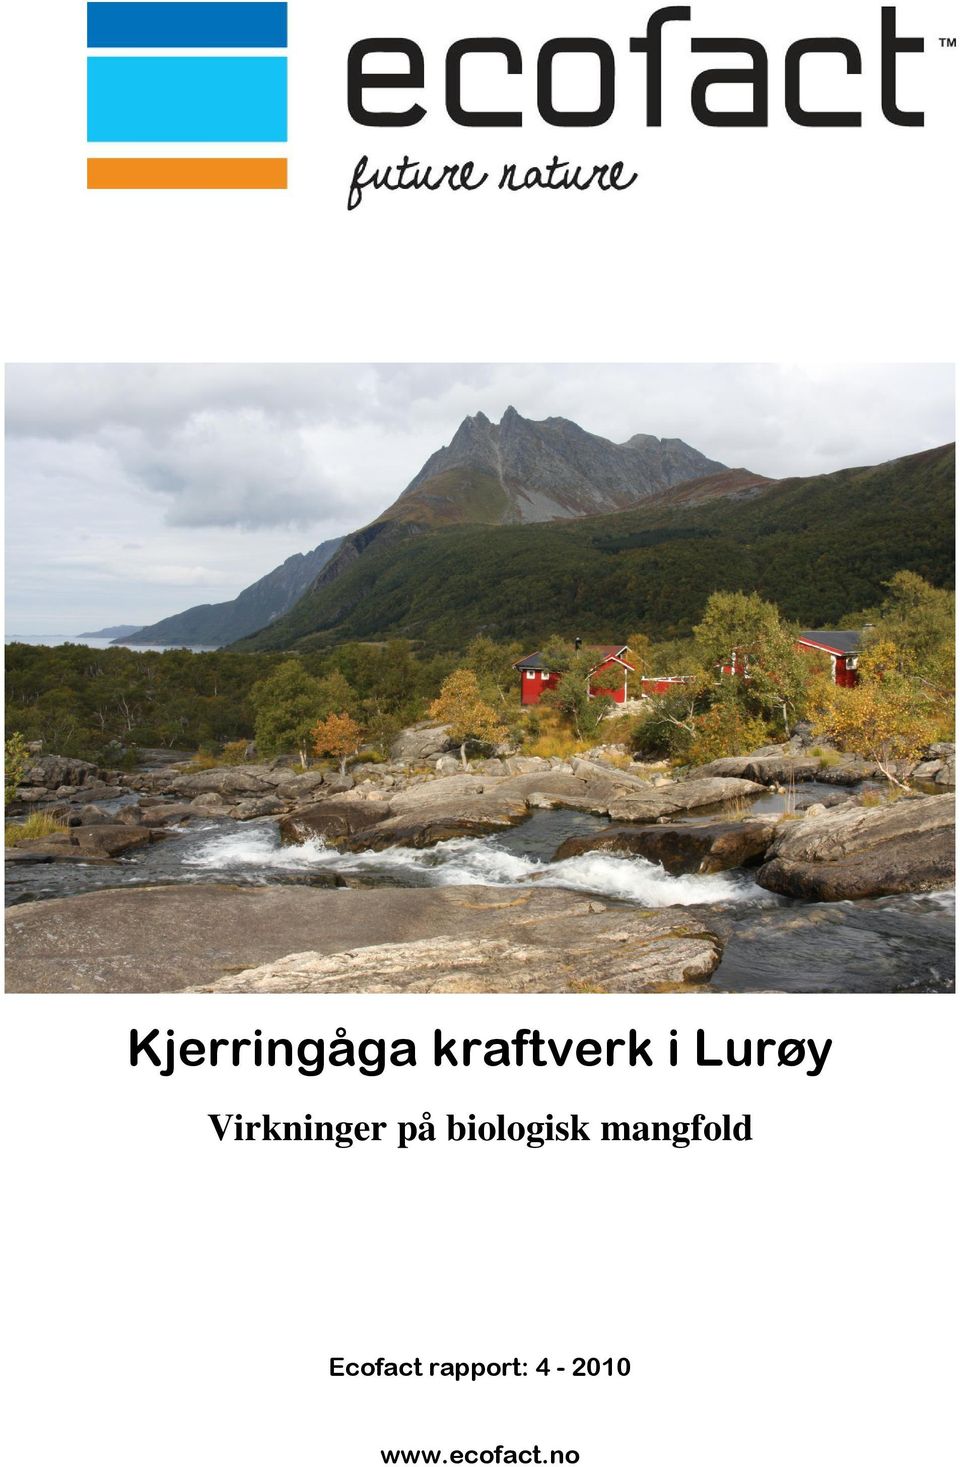 Lurøy Ecofact